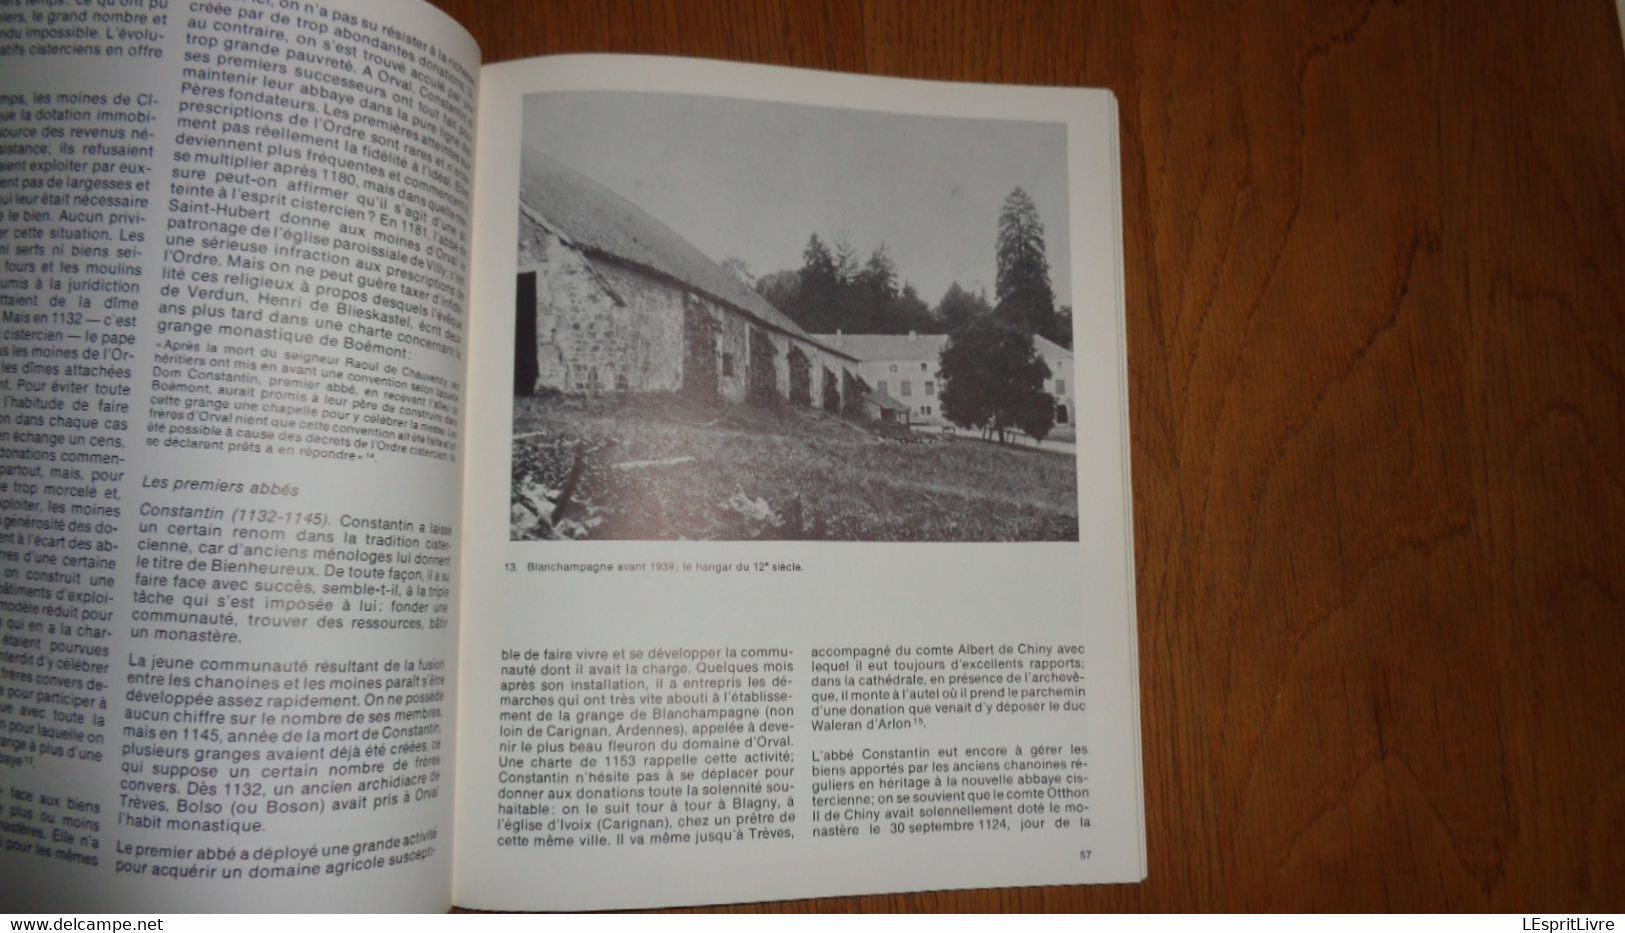 ORVAL AU FIL DES SIECLES 1 et 2 Régionalisme Gaume Histoire Essor Origines Fondation Abbaye Moines Eglise Dévotion